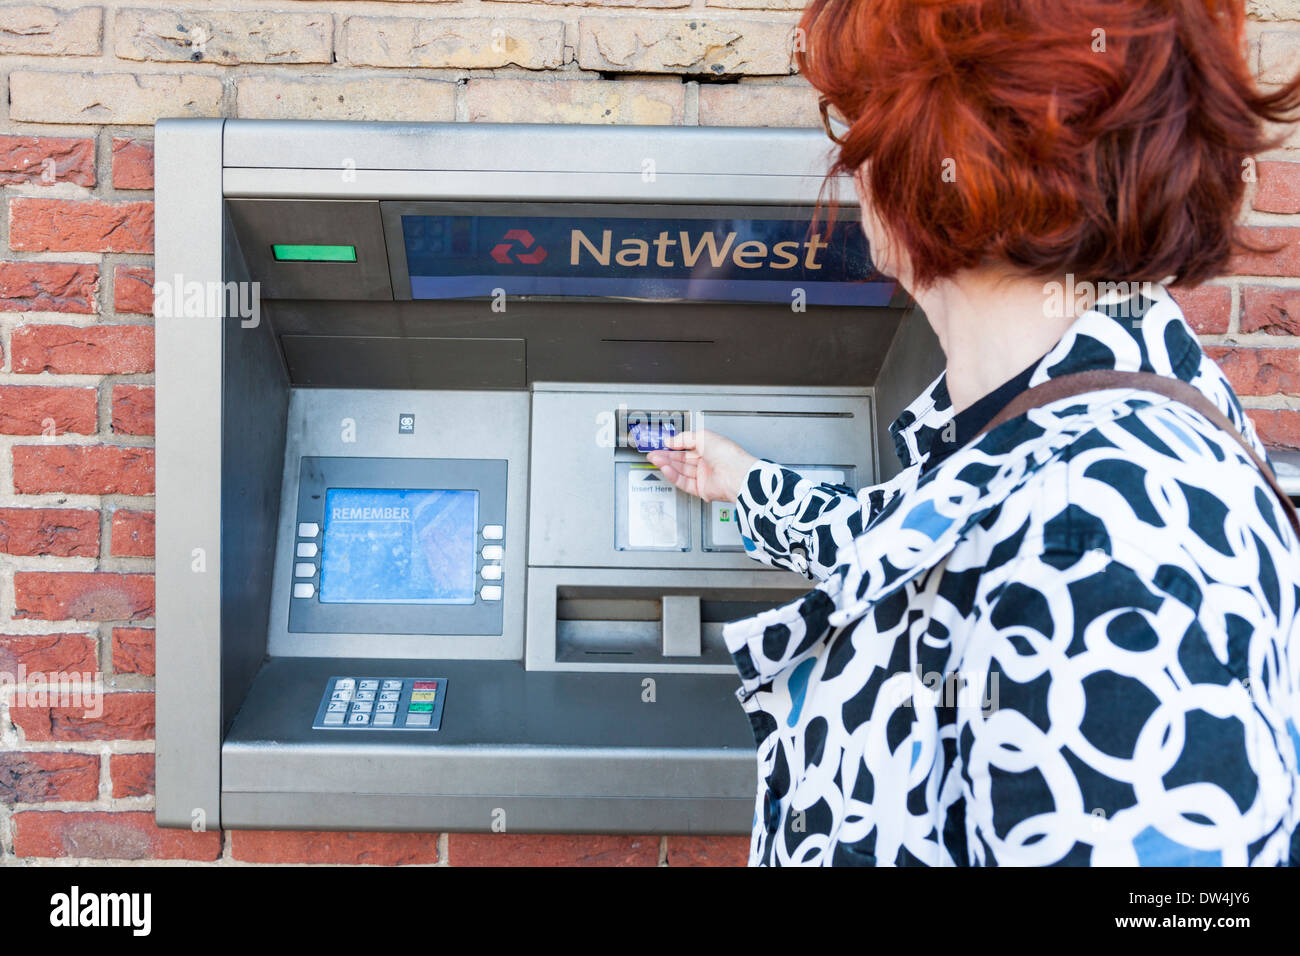 Femme à l'aide d'un distributeur automatique de billets à la banque NatWest, Lancashire, England, UK Banque D'Images